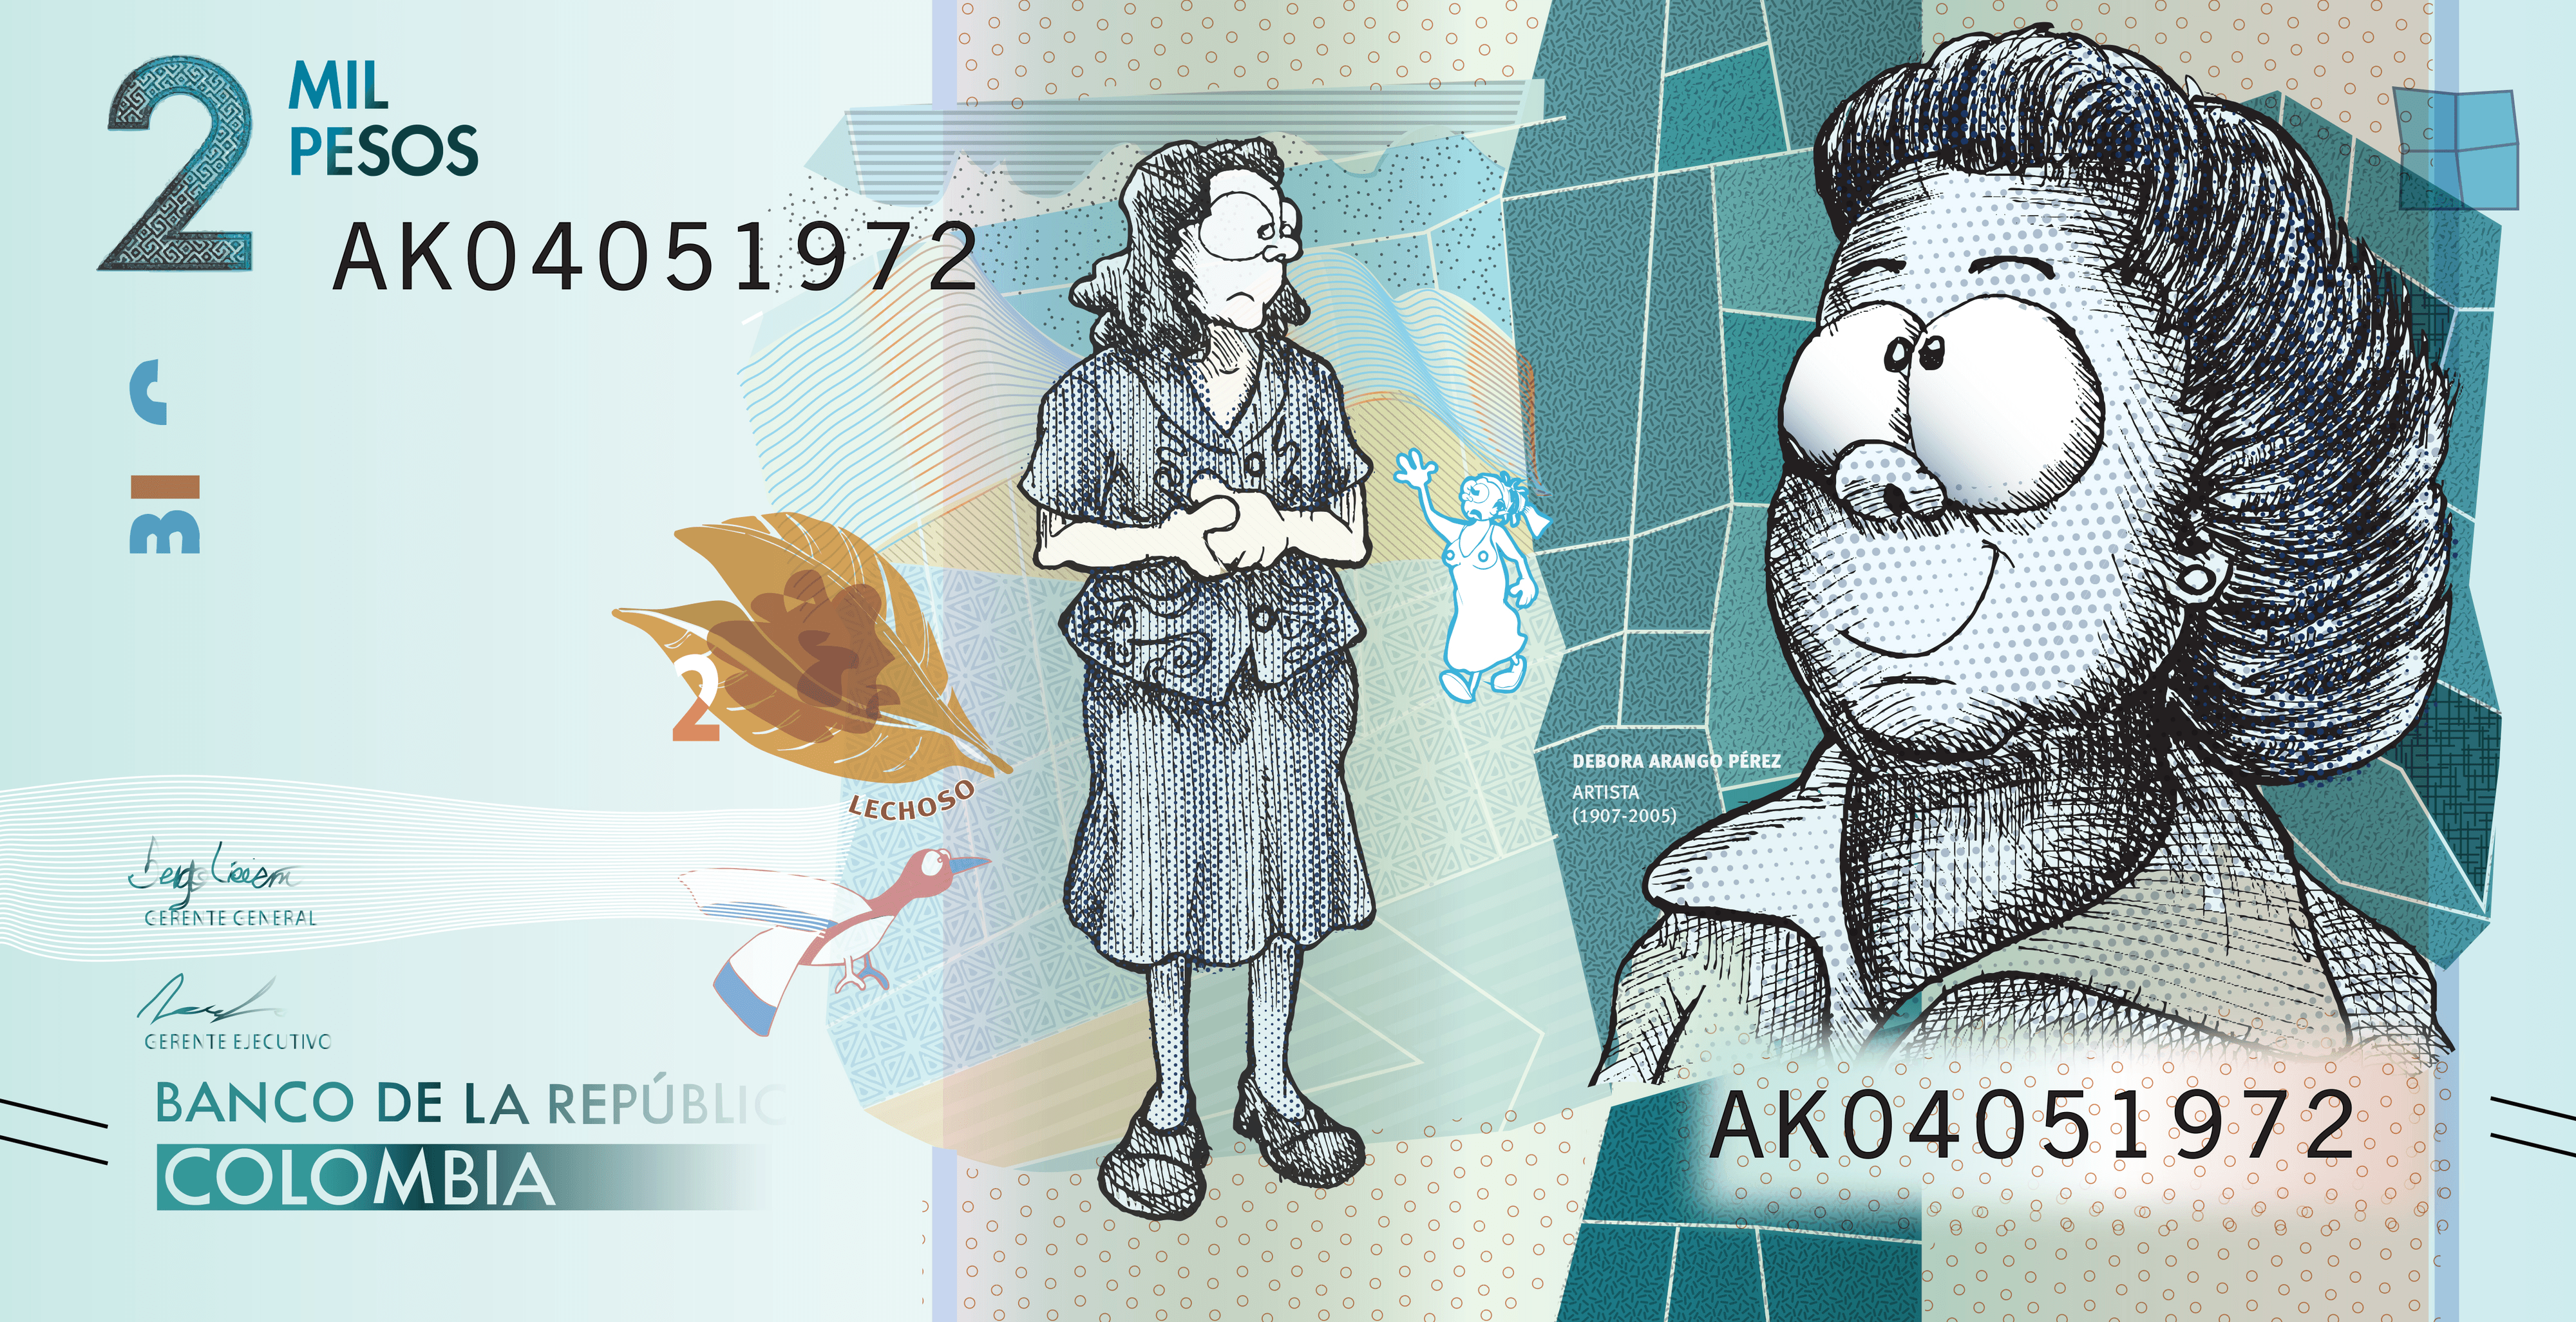 2000 pesos banknote